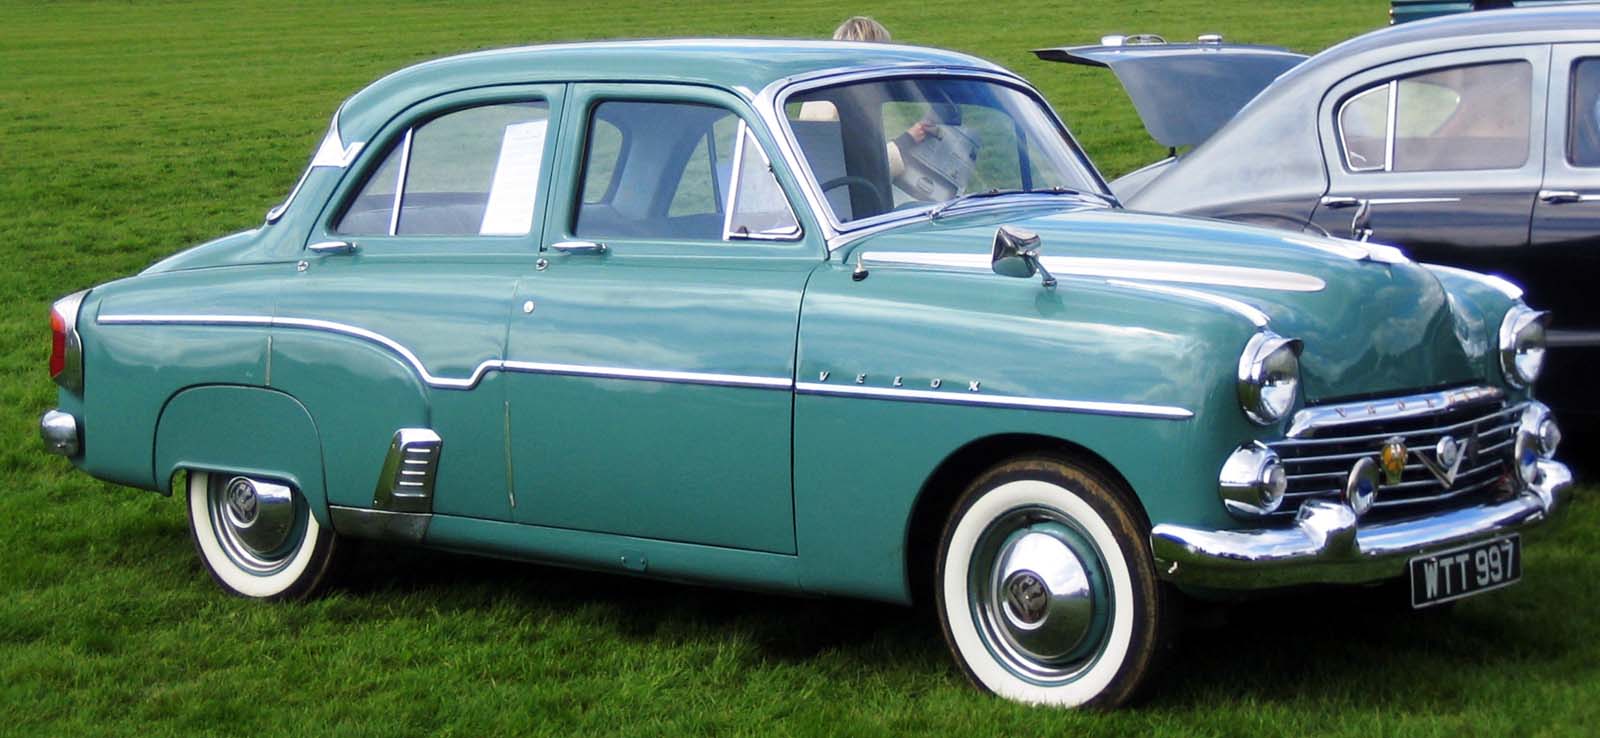 1954 Vauxhall Velox